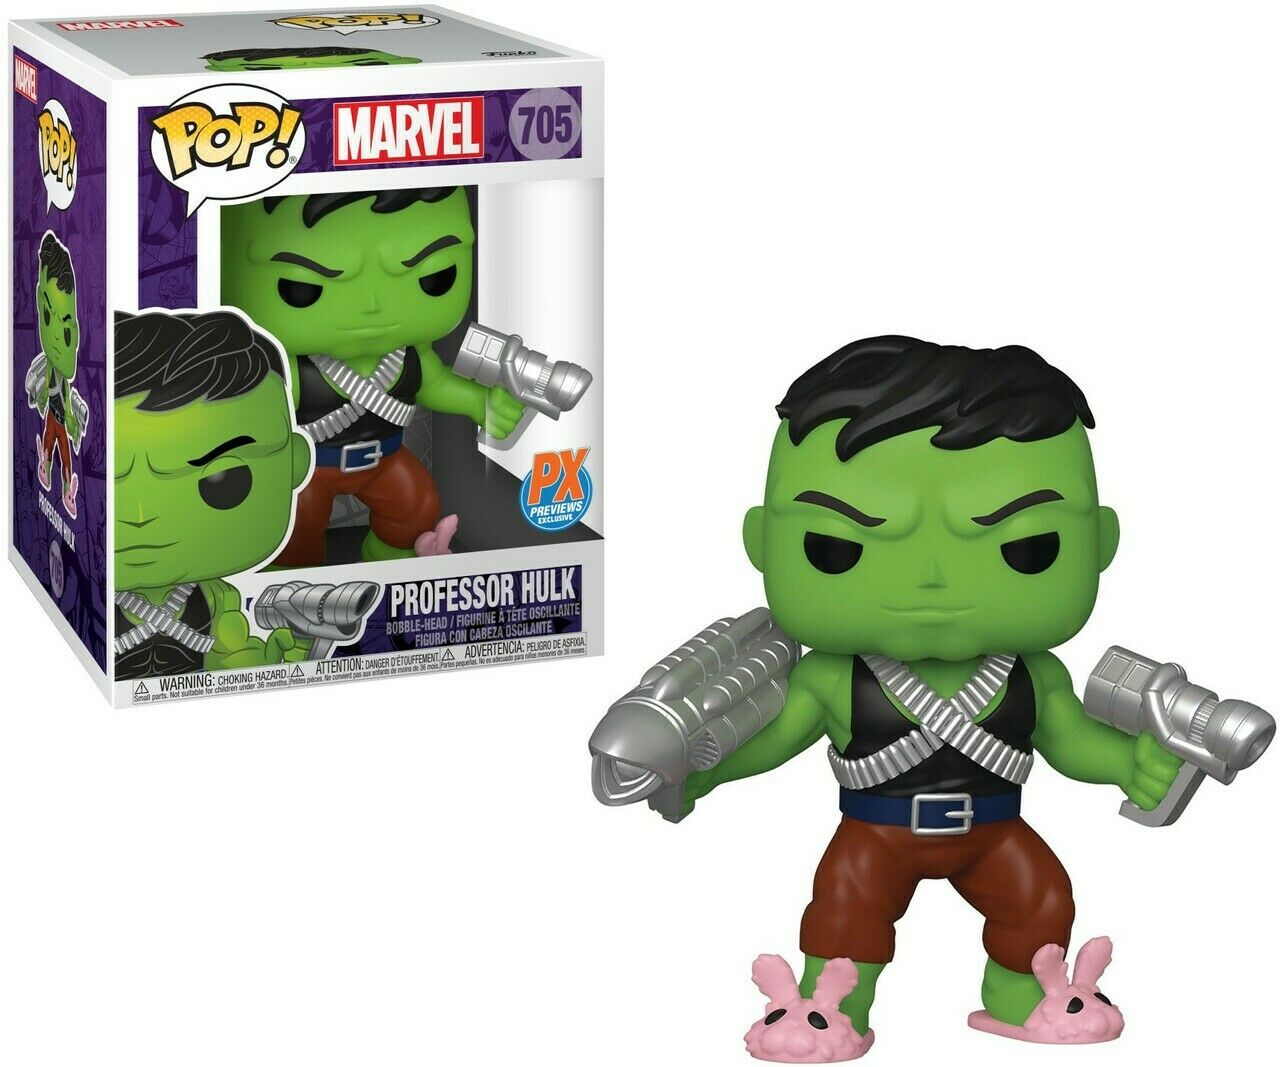 Funko Pop! The Hulk - Professor Hulk 6 Super Sized #705 - Chase Chanc